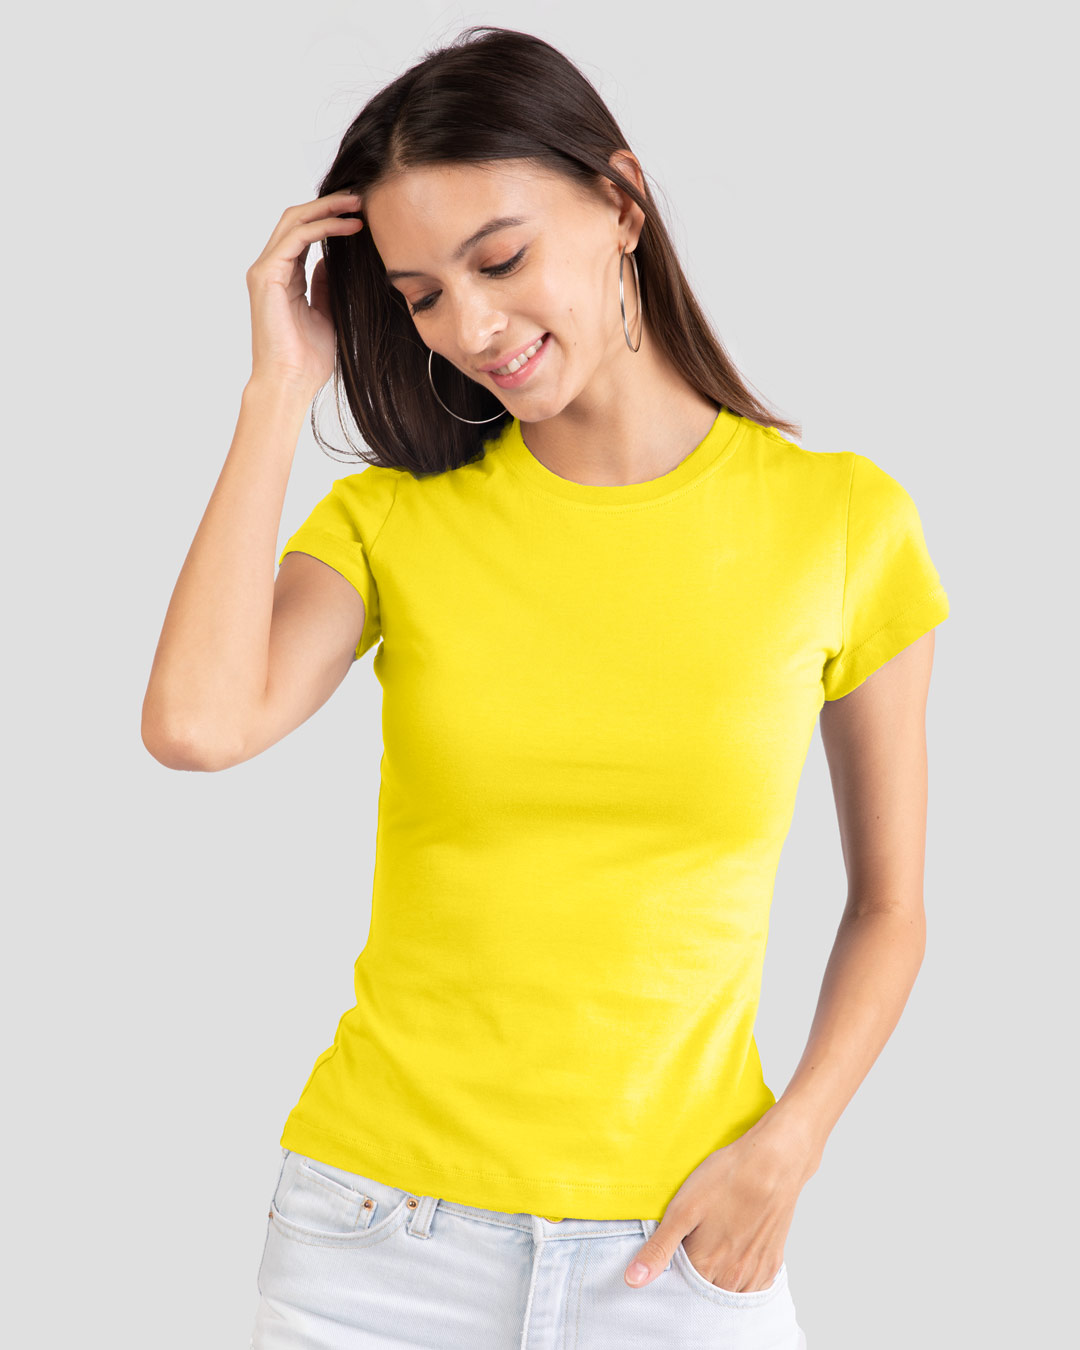 Buy Pineapple Yellow Plain Half Sleeve T-Shirt For Women Online India @ Bewakoof.com